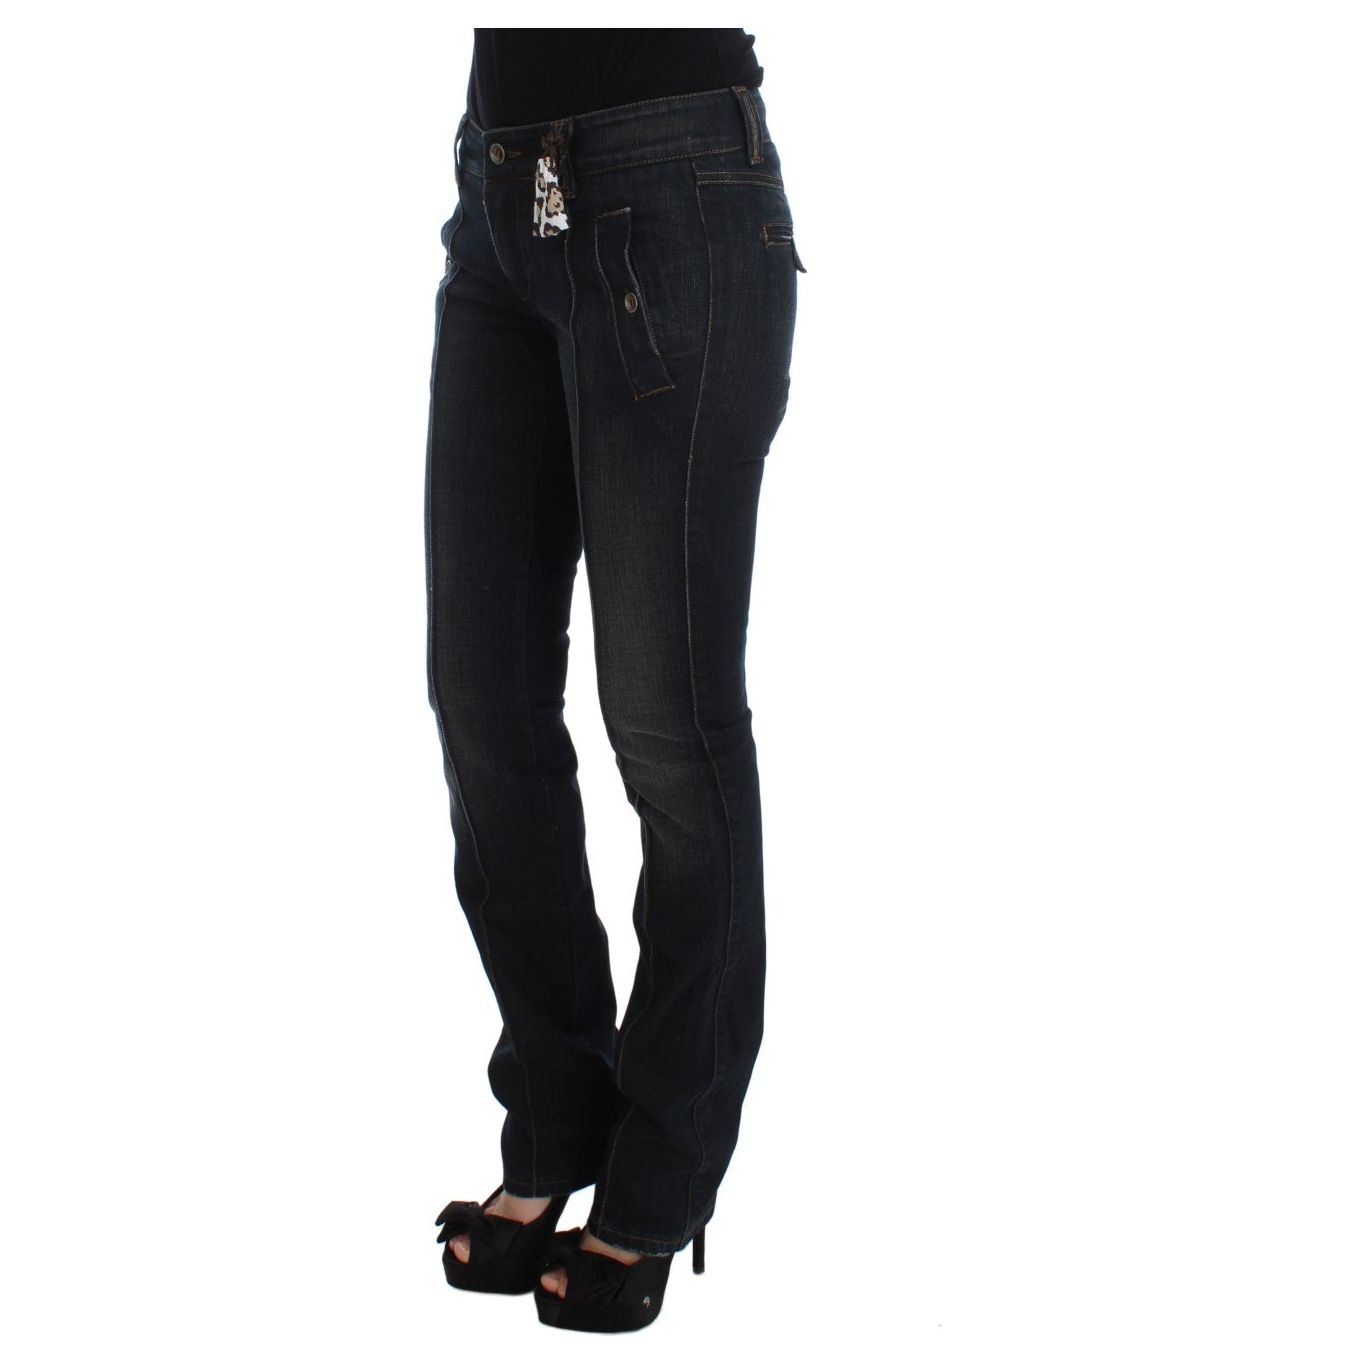 Ermanno Scervino Chic Slim Fit Italian Cotton Jeans blue-wash-cotton-slim-fit-jeans 318990-blue-wash-cotton-slim-fit-jeans-1.jpg